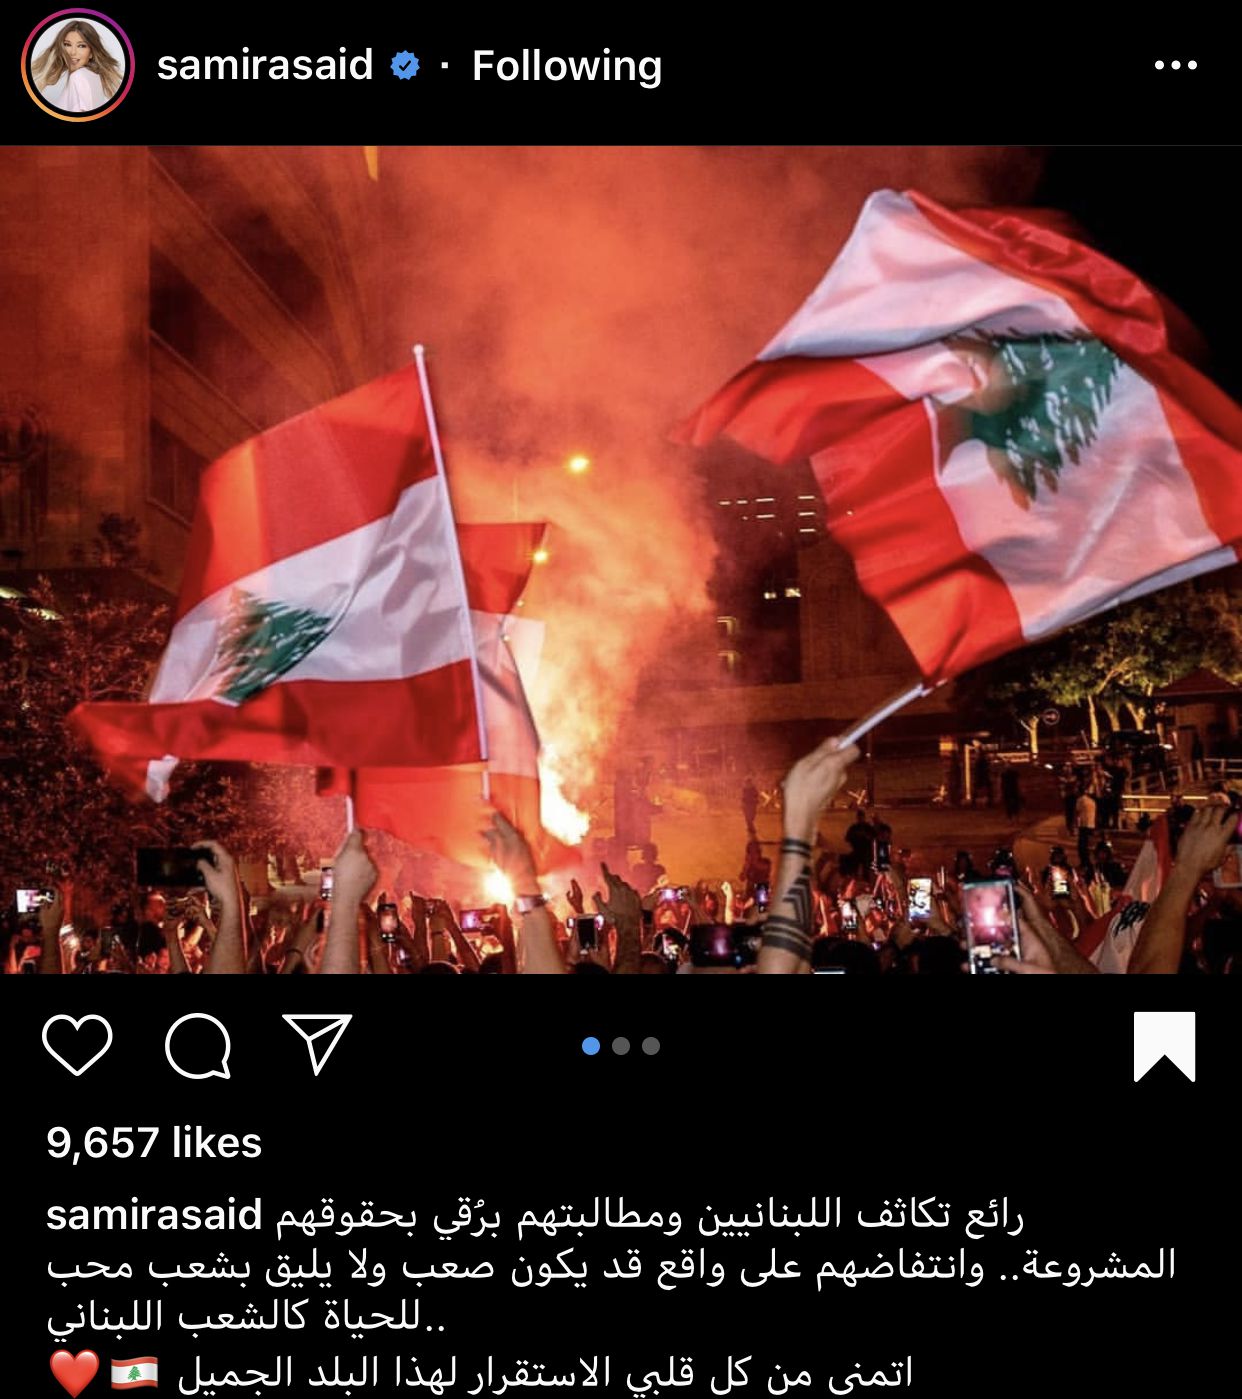 سميرة سعيد ورسالتها للشعب اللبناني - صورة